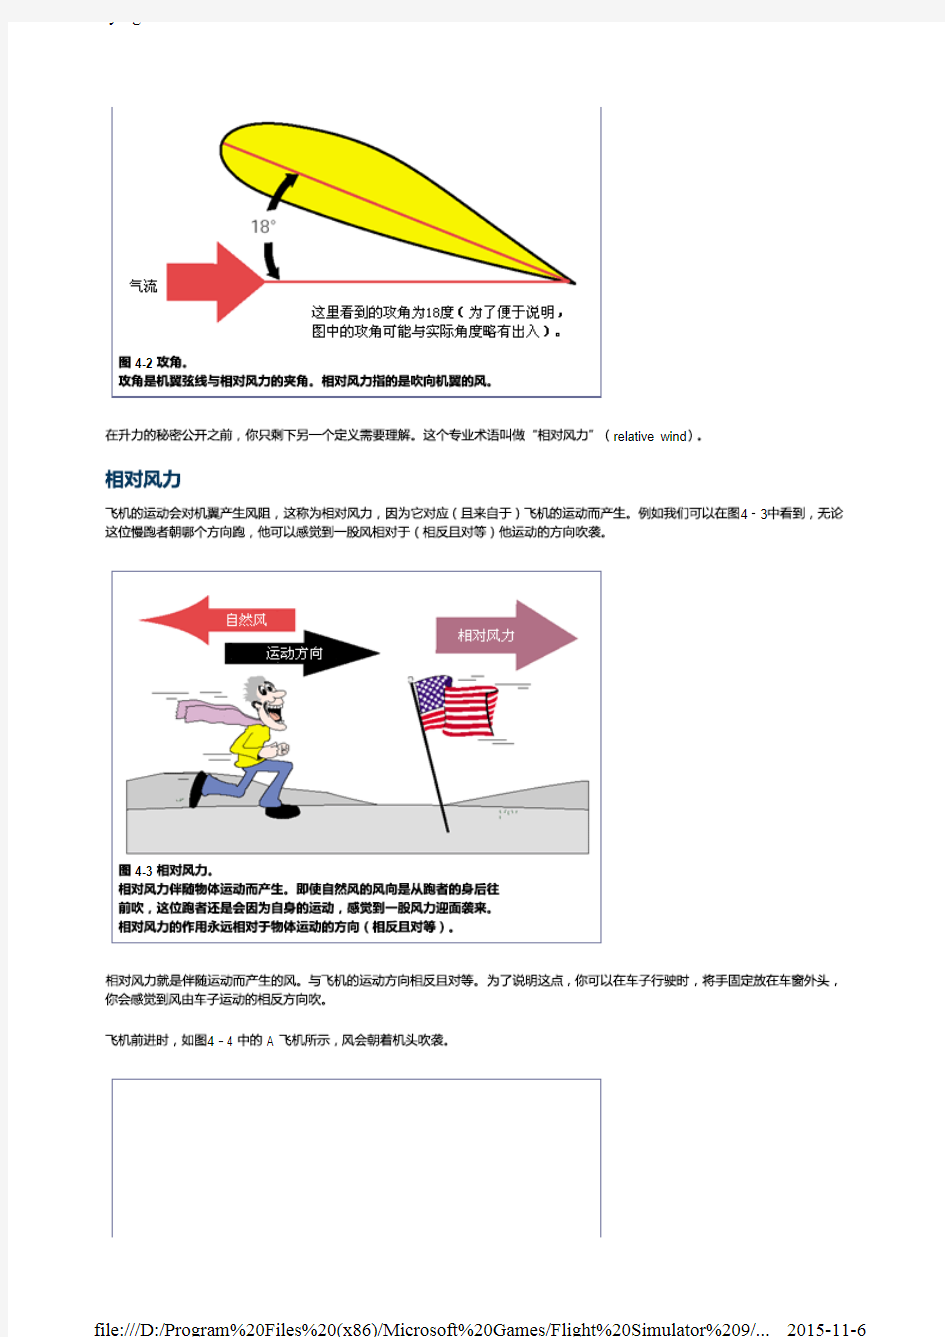 微软模拟飞行2004飞行课程(中文版)1.4. 低速飞行